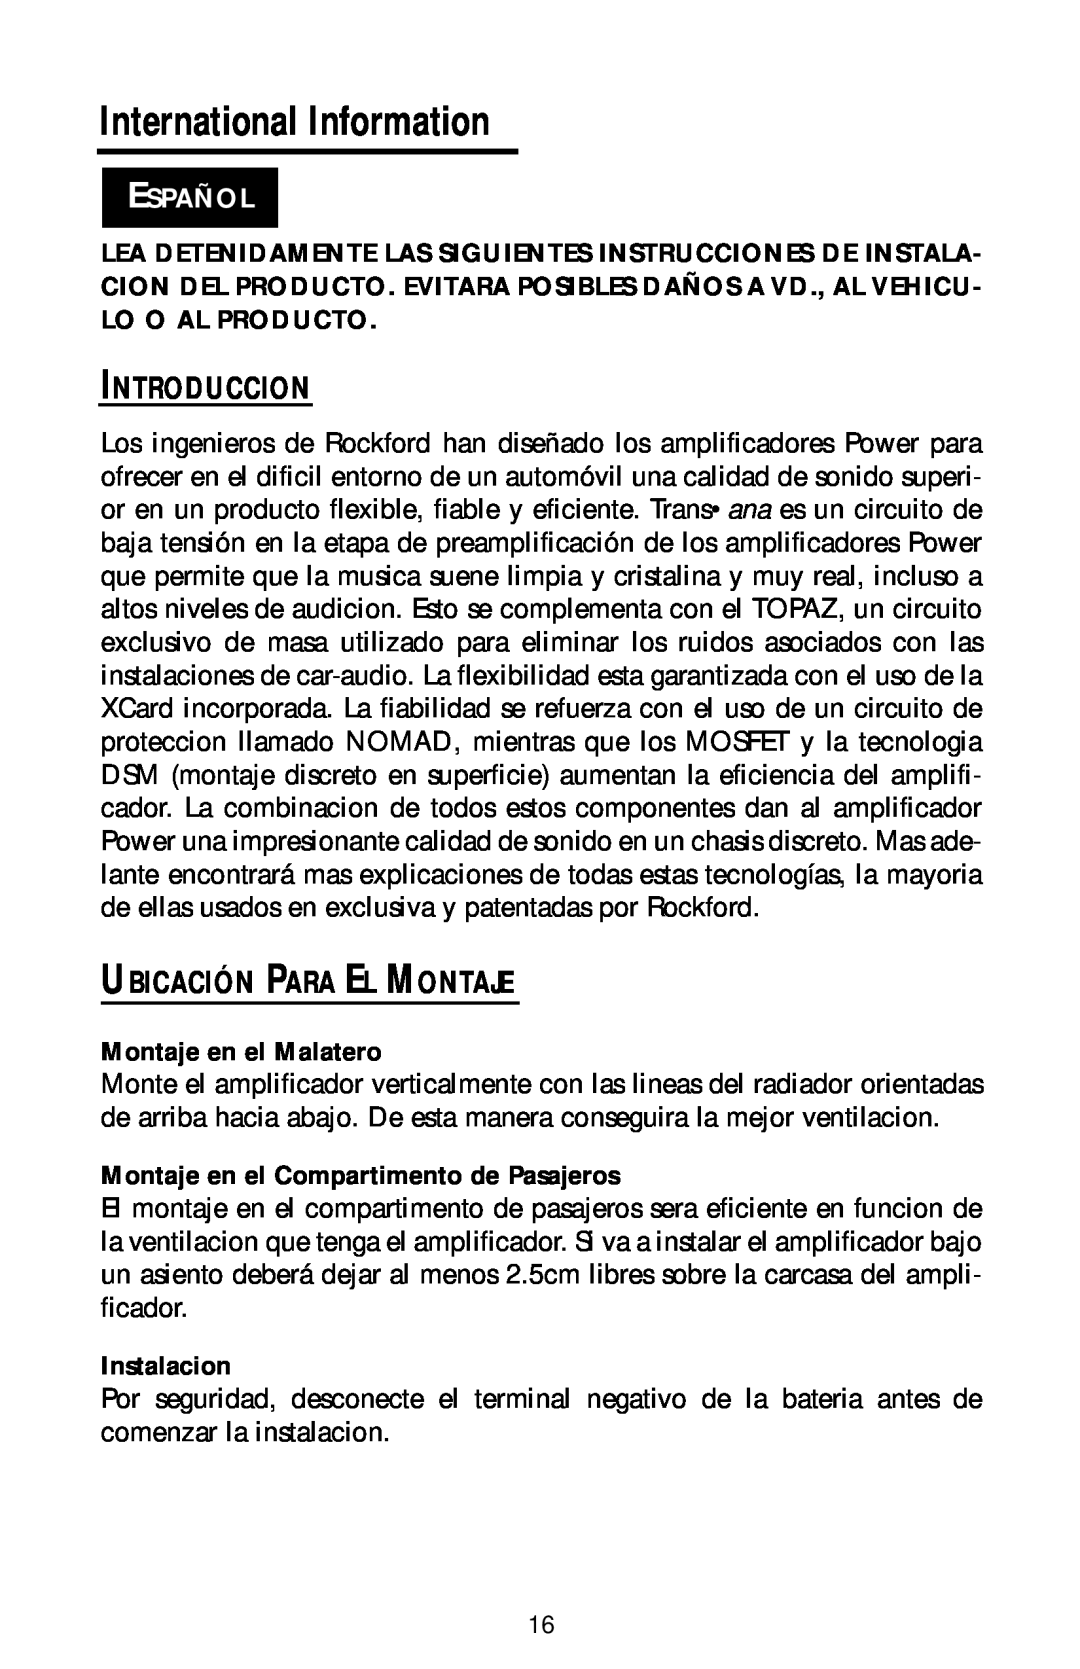 Rockford Fosgate bd1000.1 manual International Information, Introduccion, Ubicación Para El Montaje, Español, Instalacion 